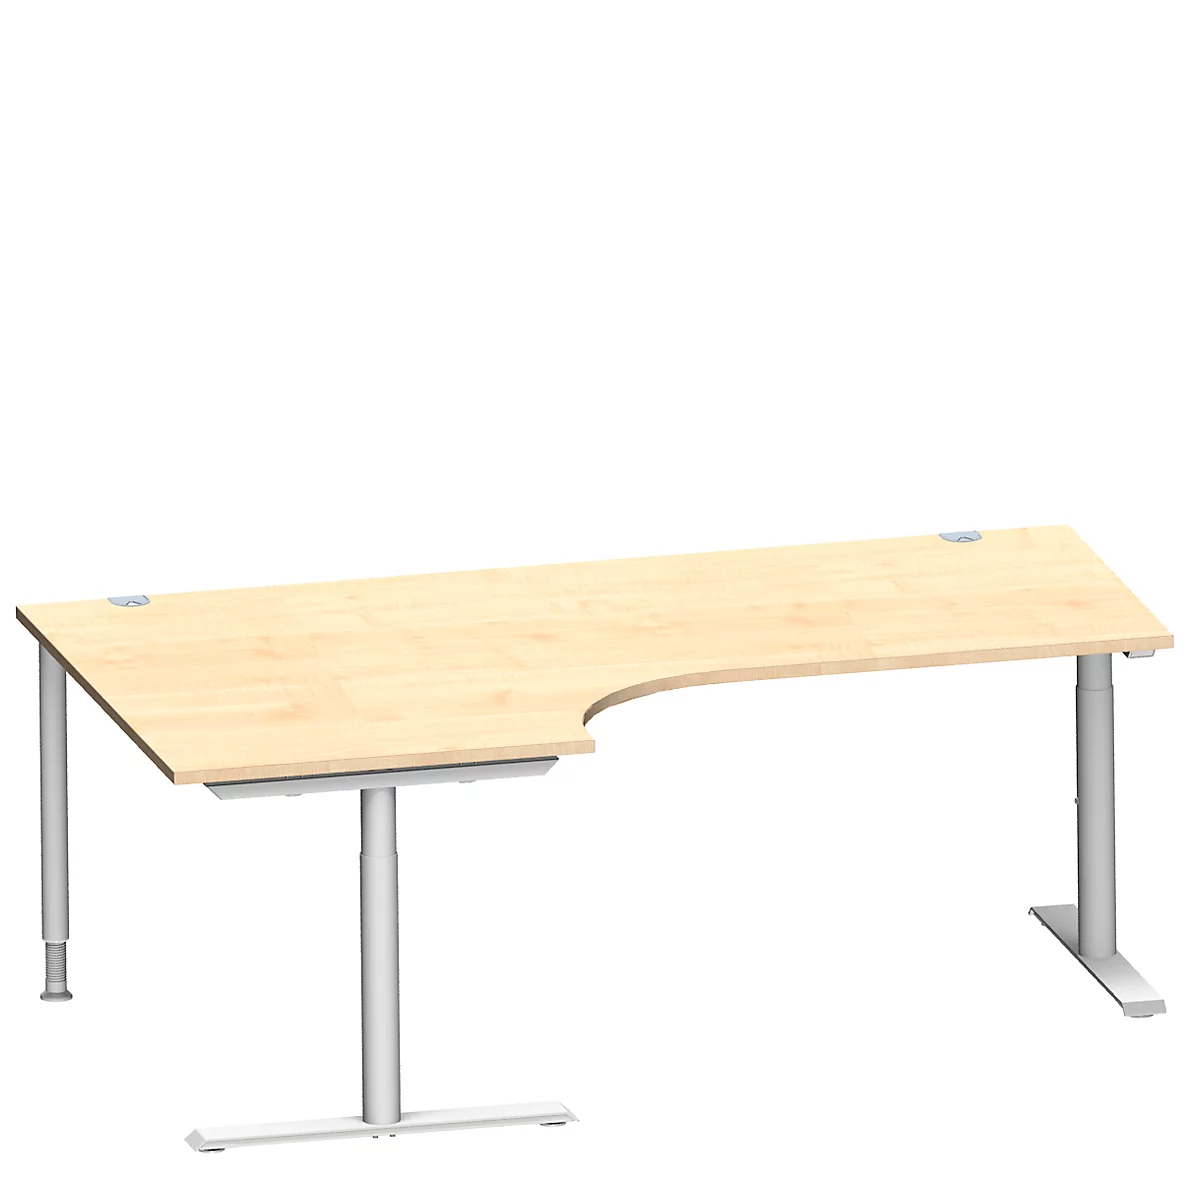 Schäfer Shop Genius escritorio angular MODENA FLEX 90°, fijación a la izquierda, pata en T tubo redondo, An 2000 mm, arce/blanco